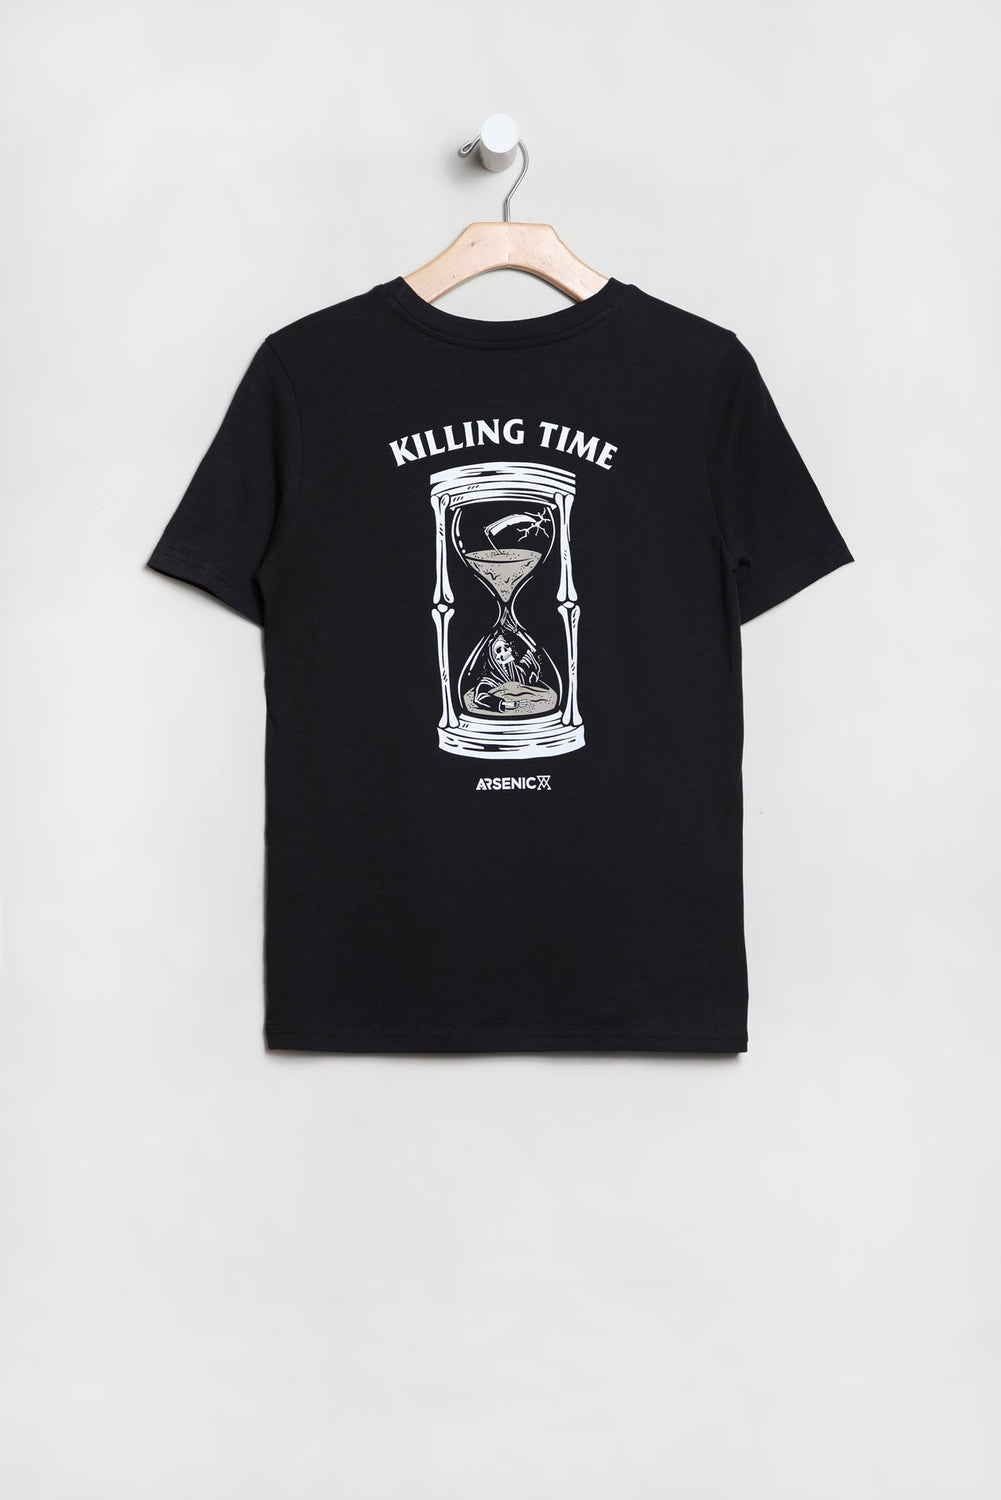 Arsenic Youth Killing Time T-Shirt Arsenic Youth Killing Time T-Shirt